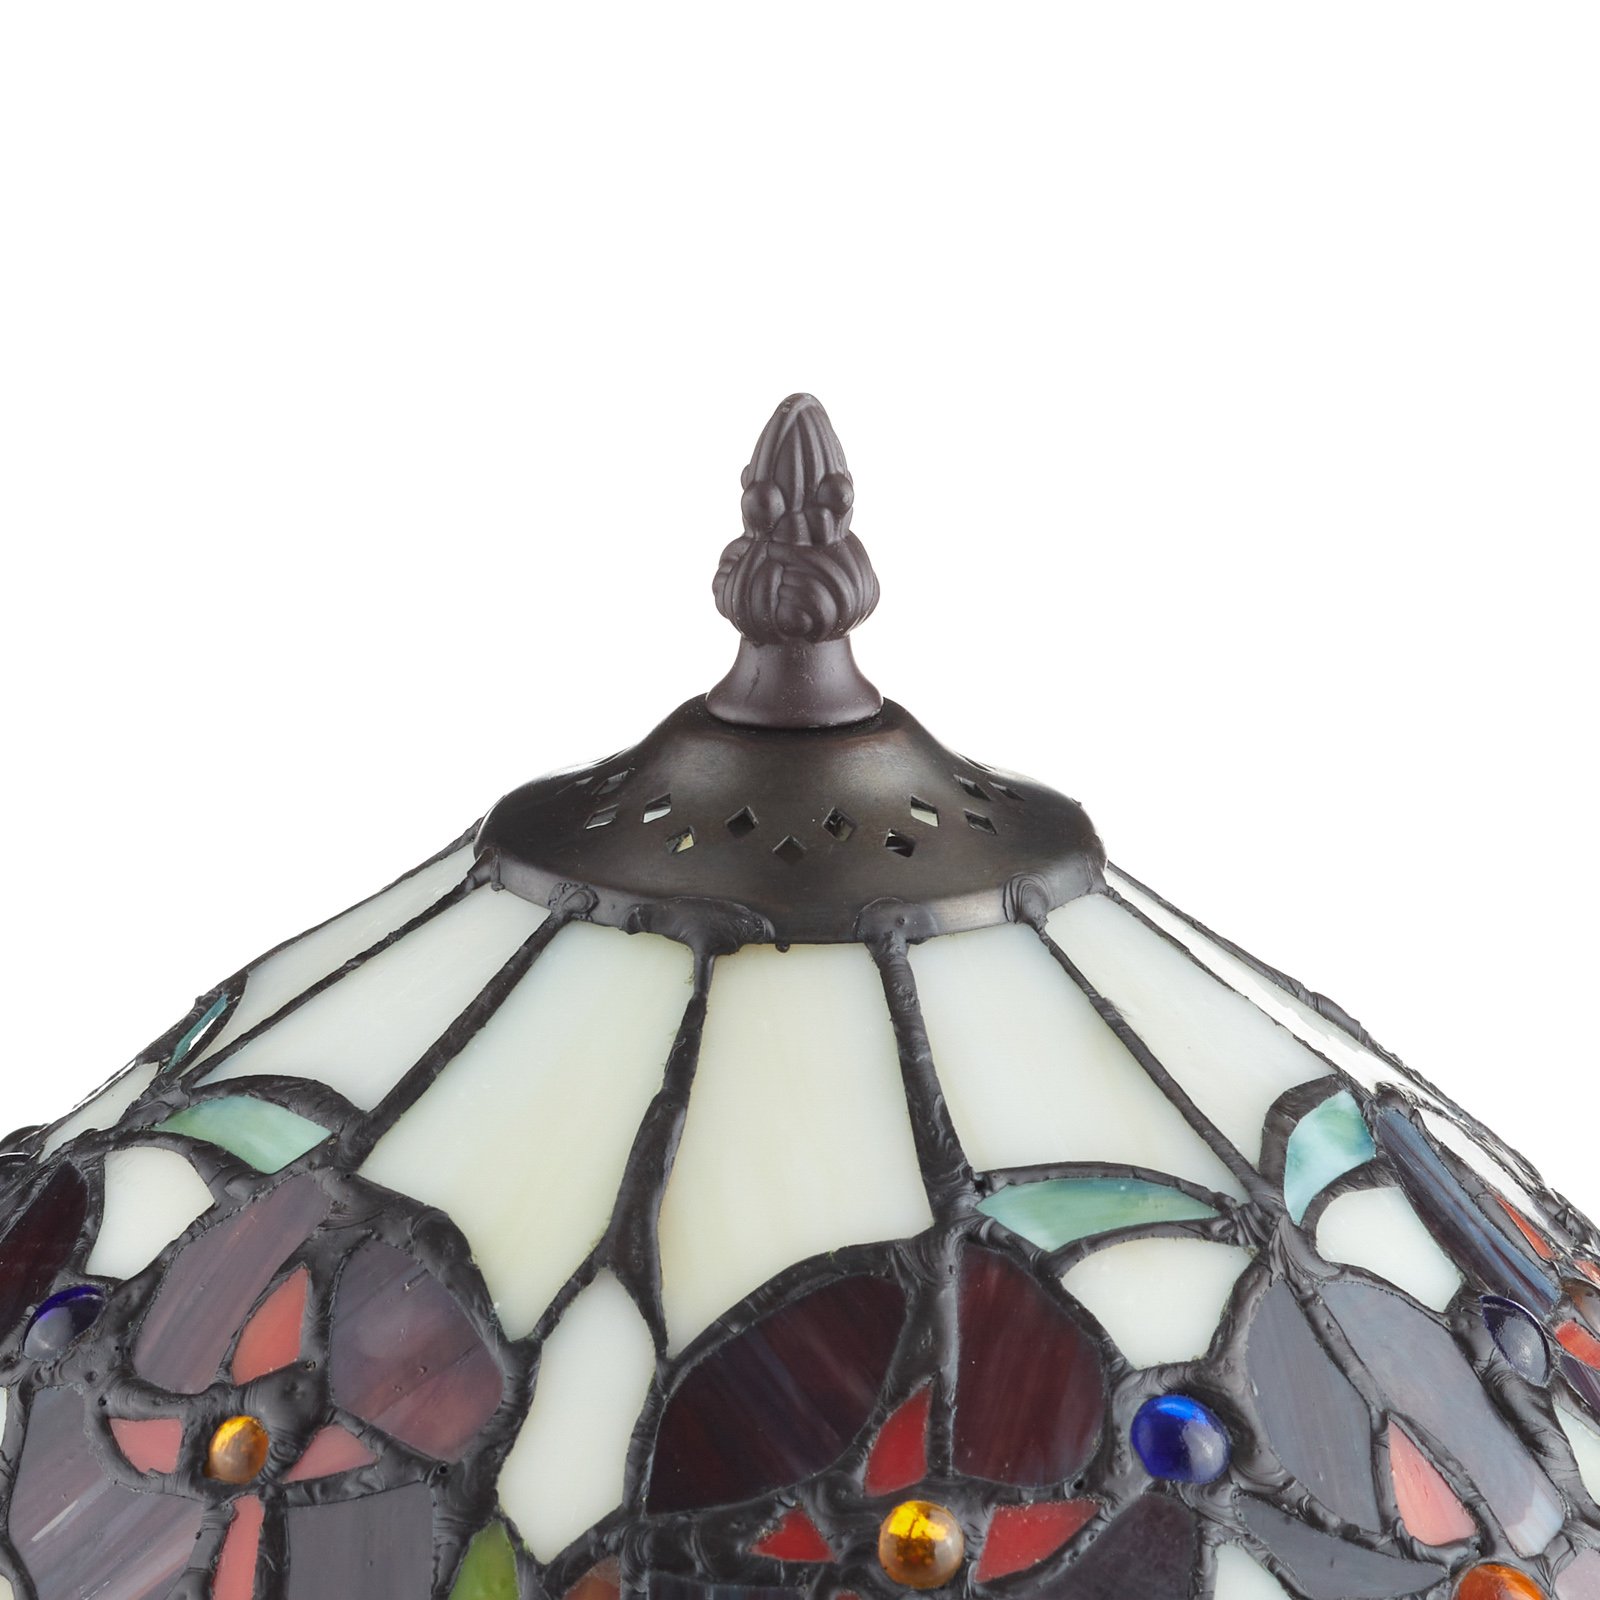 ELINE klasická Tiffany styl stolní lampa 40 cm